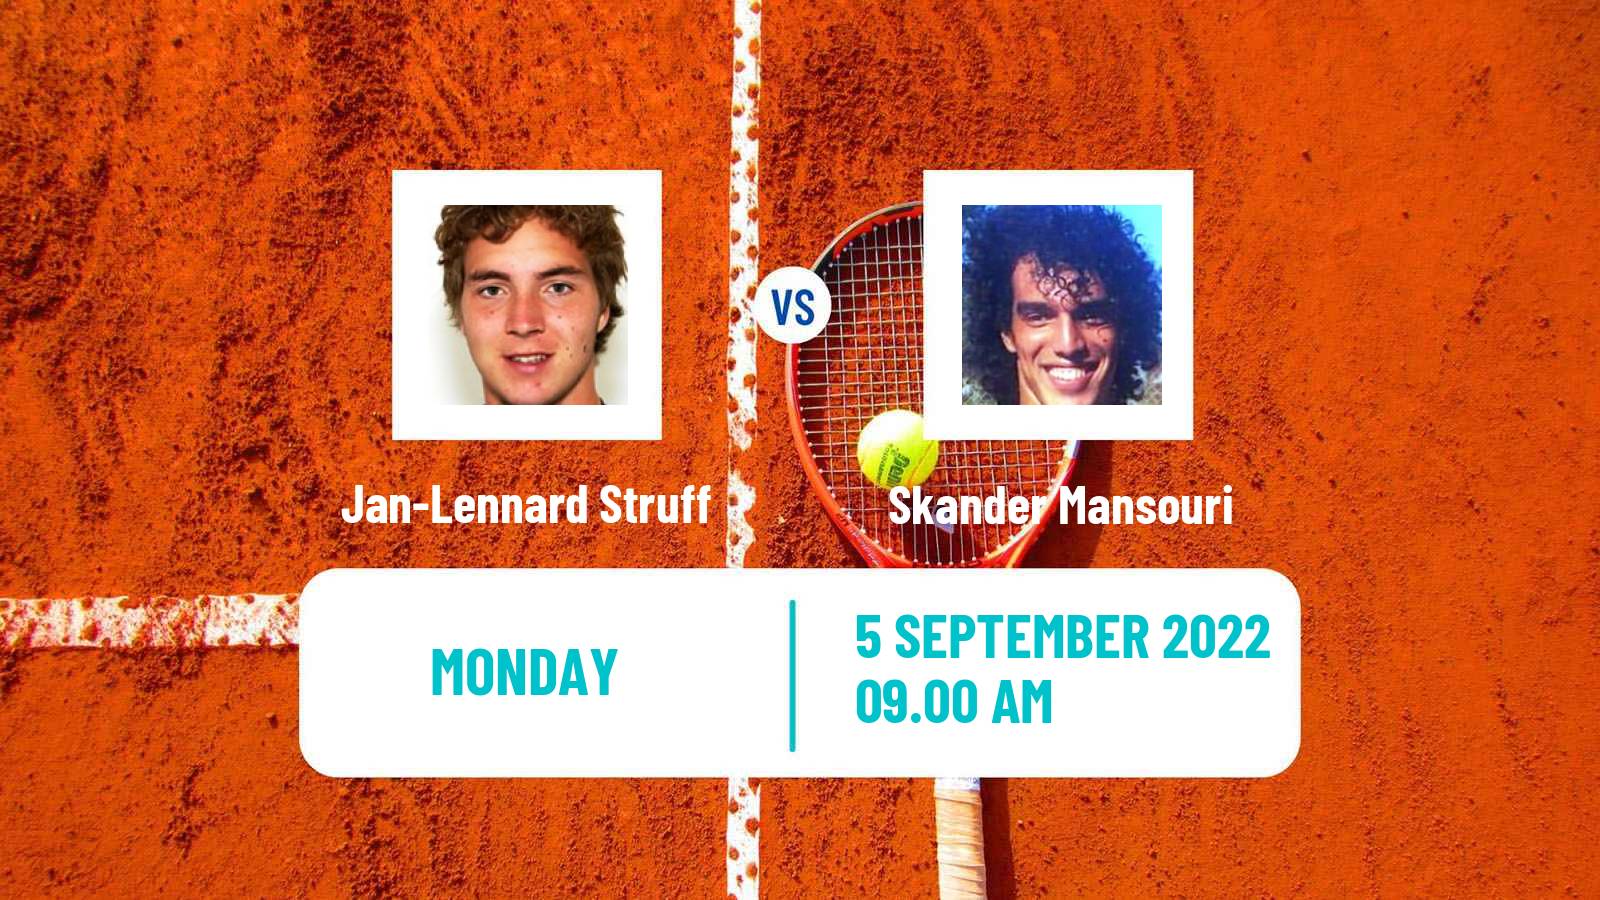 Tennis ATP Challenger Jan-Lennard Struff - Skander Mansouri